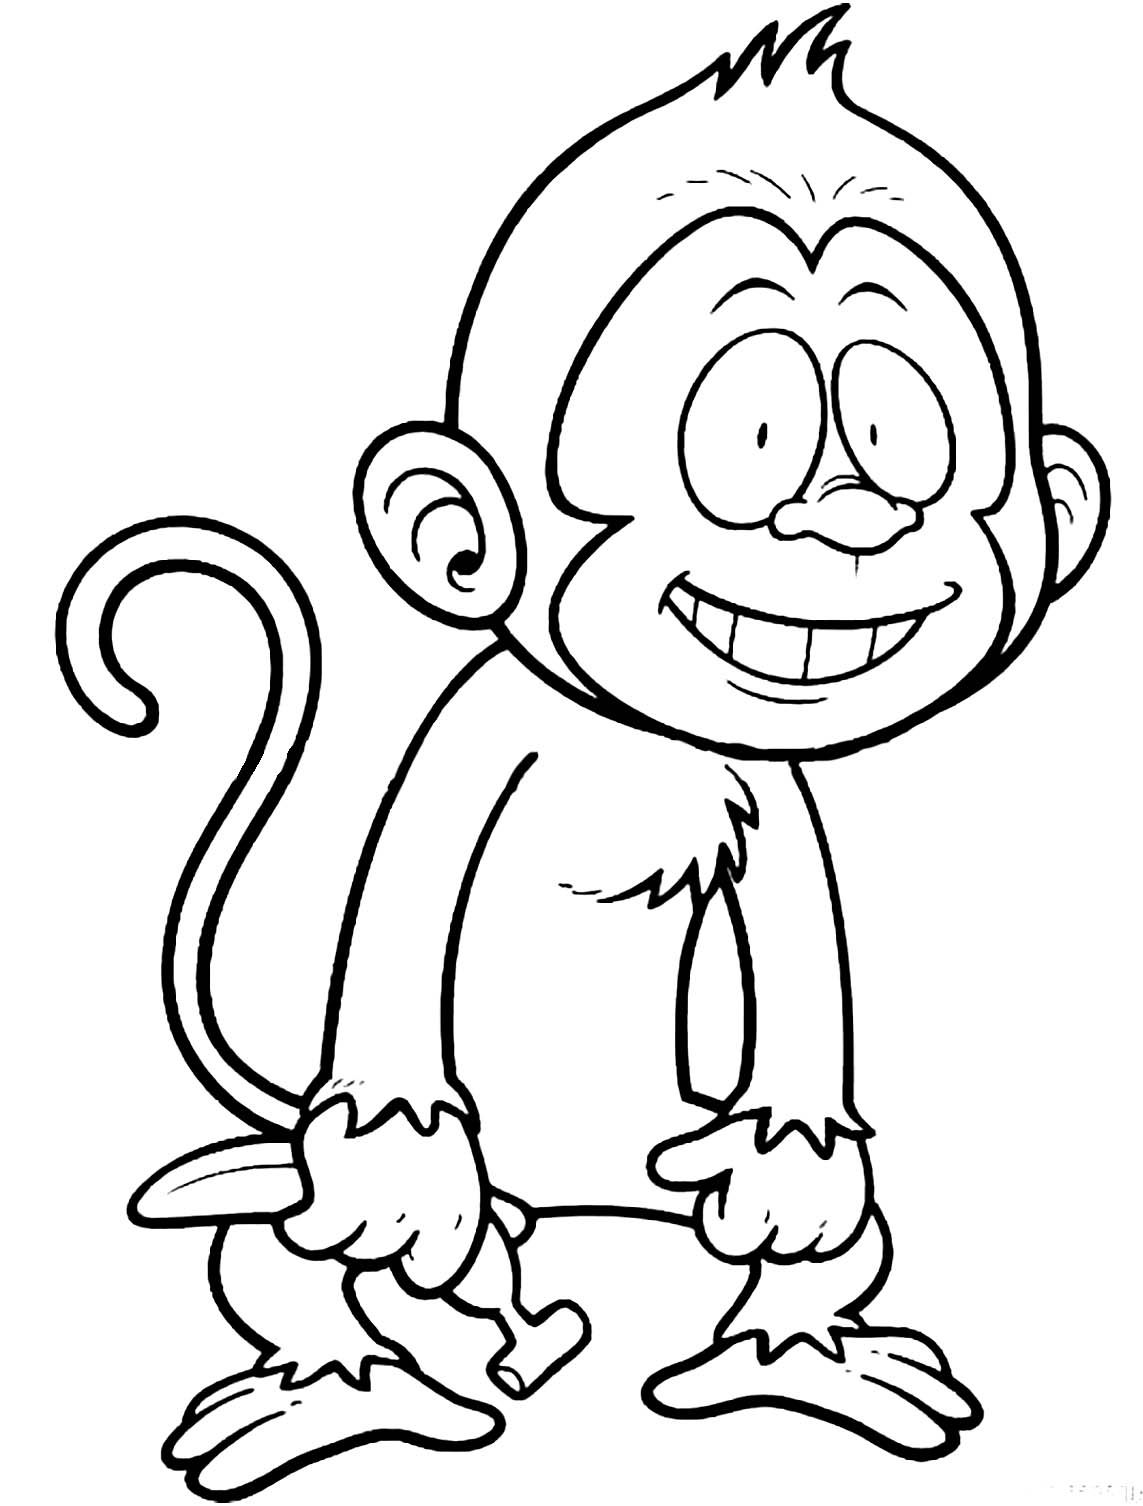 Estresante Desde allí Depender de Dibujo de mono para descargar y colorear - Monos - Just Color Niños :  Dibujos para colorear para niños